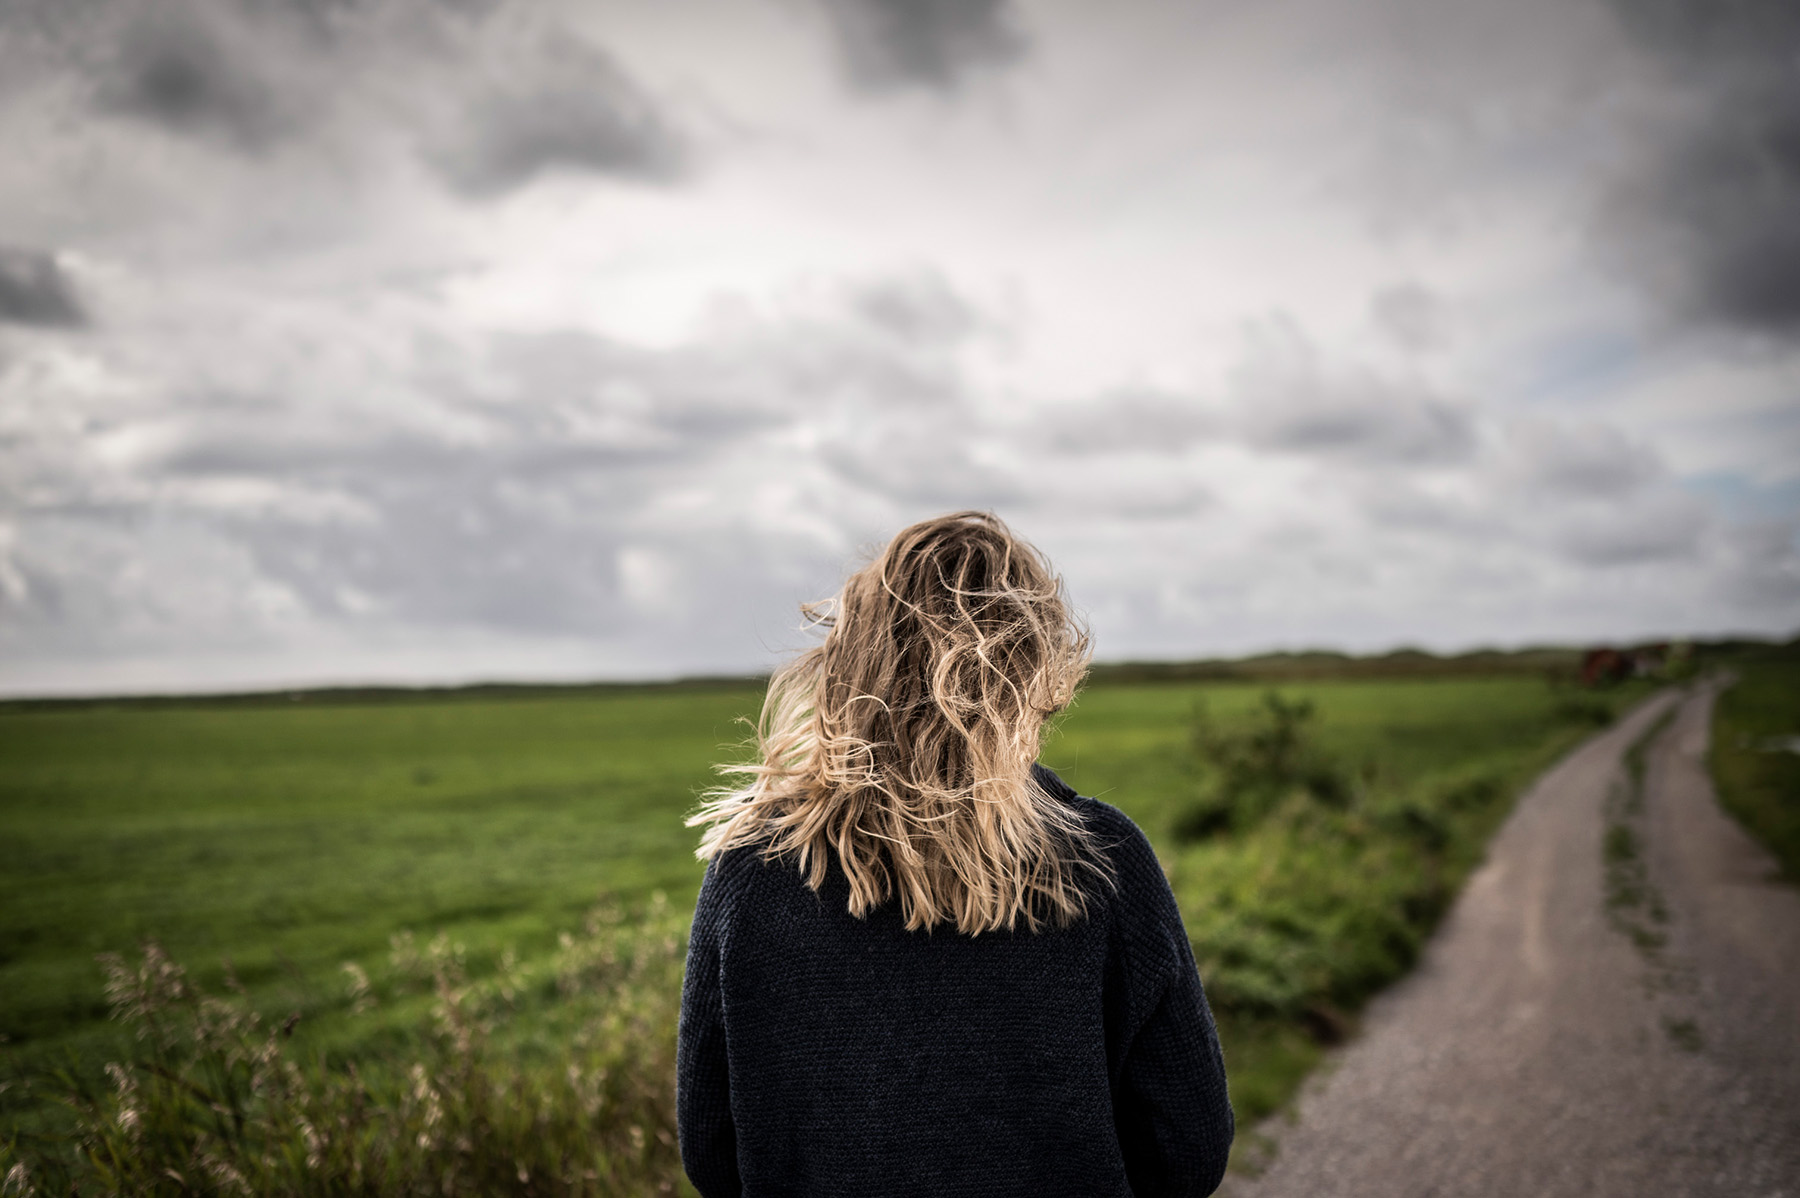 Foto: Kvinne som skuer utover horisonten.